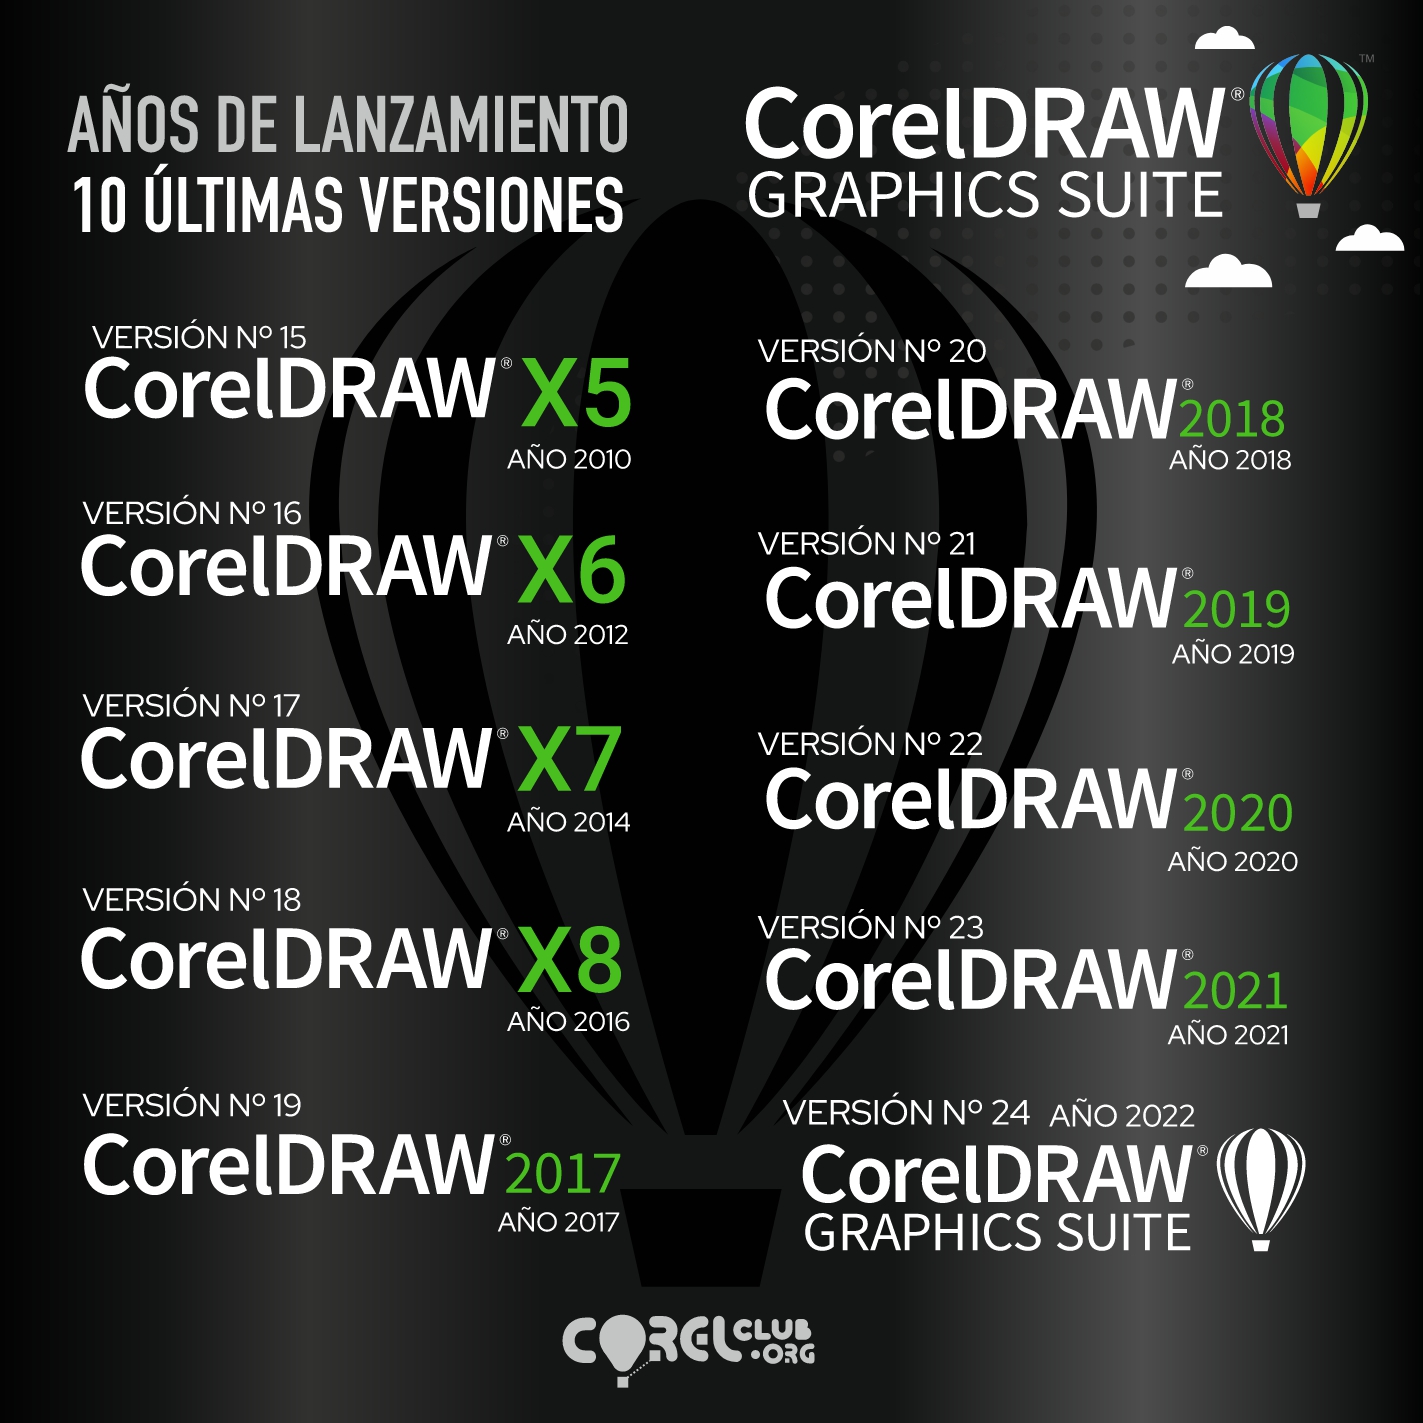 Tabla comparativa de versiones de CorelDRAW